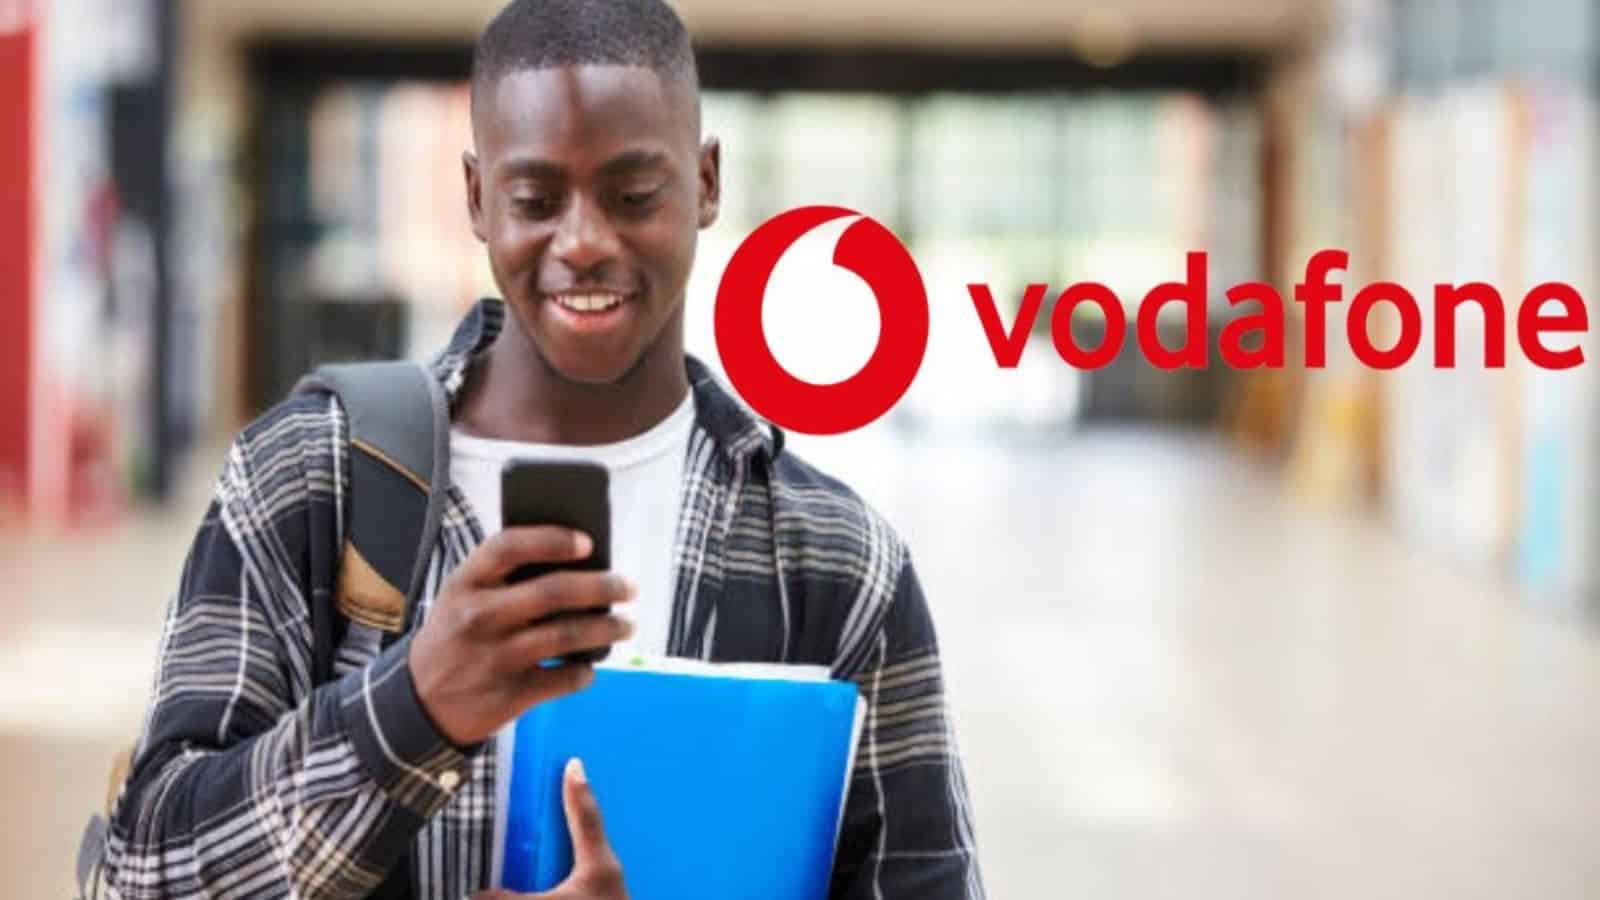 Vodafone, come avere in regalo 50 GB con le Silver: costano 7,99 euro